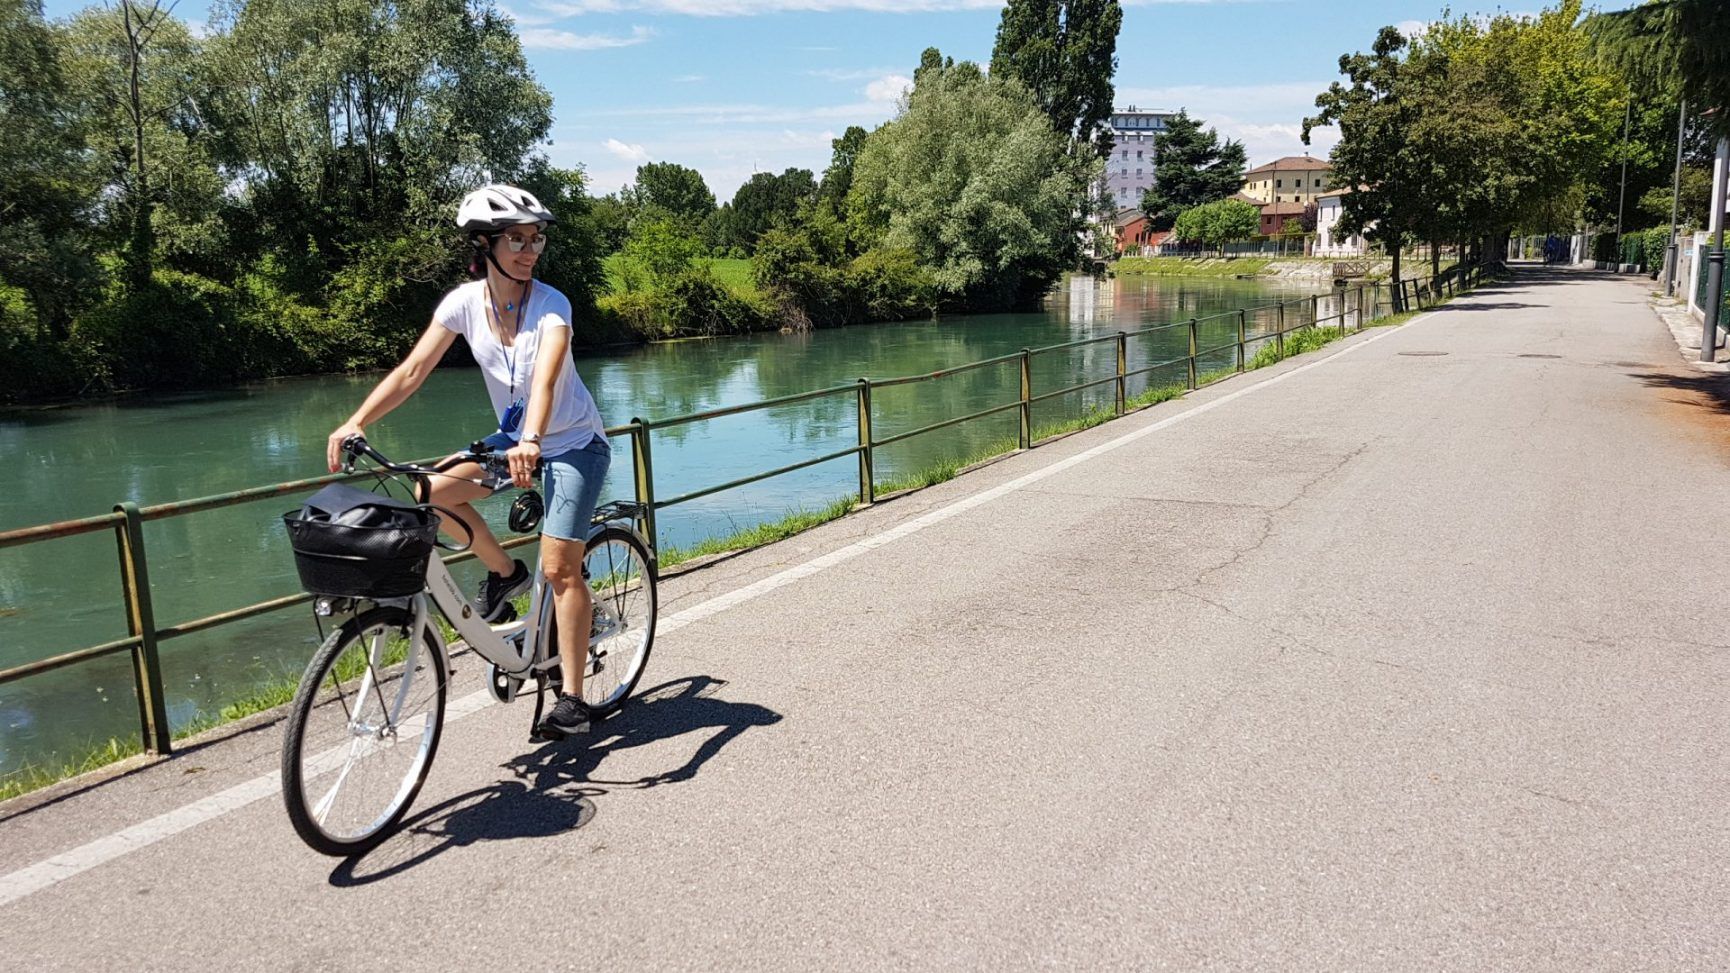 Pasqua 2022: 5 idee per una vacanza con la bici - Bike Habits